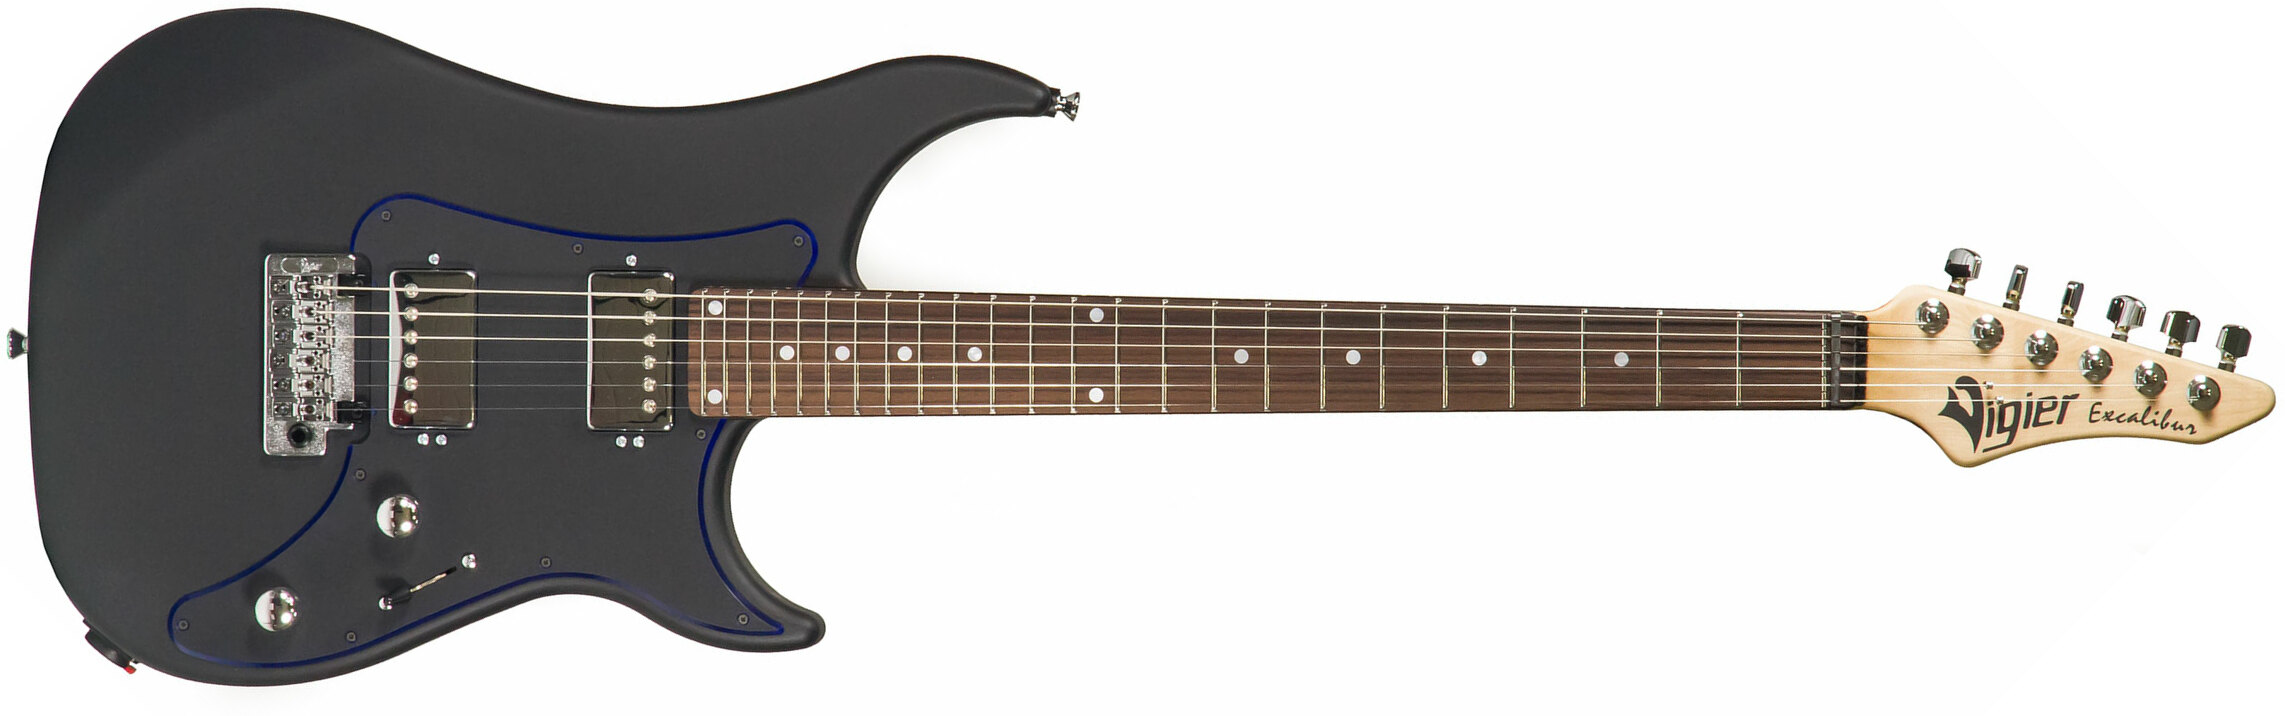 Vigier Excalibur Indus Hh Trem Rw - Textured Black - Guitarra eléctrica de doble corte - Main picture